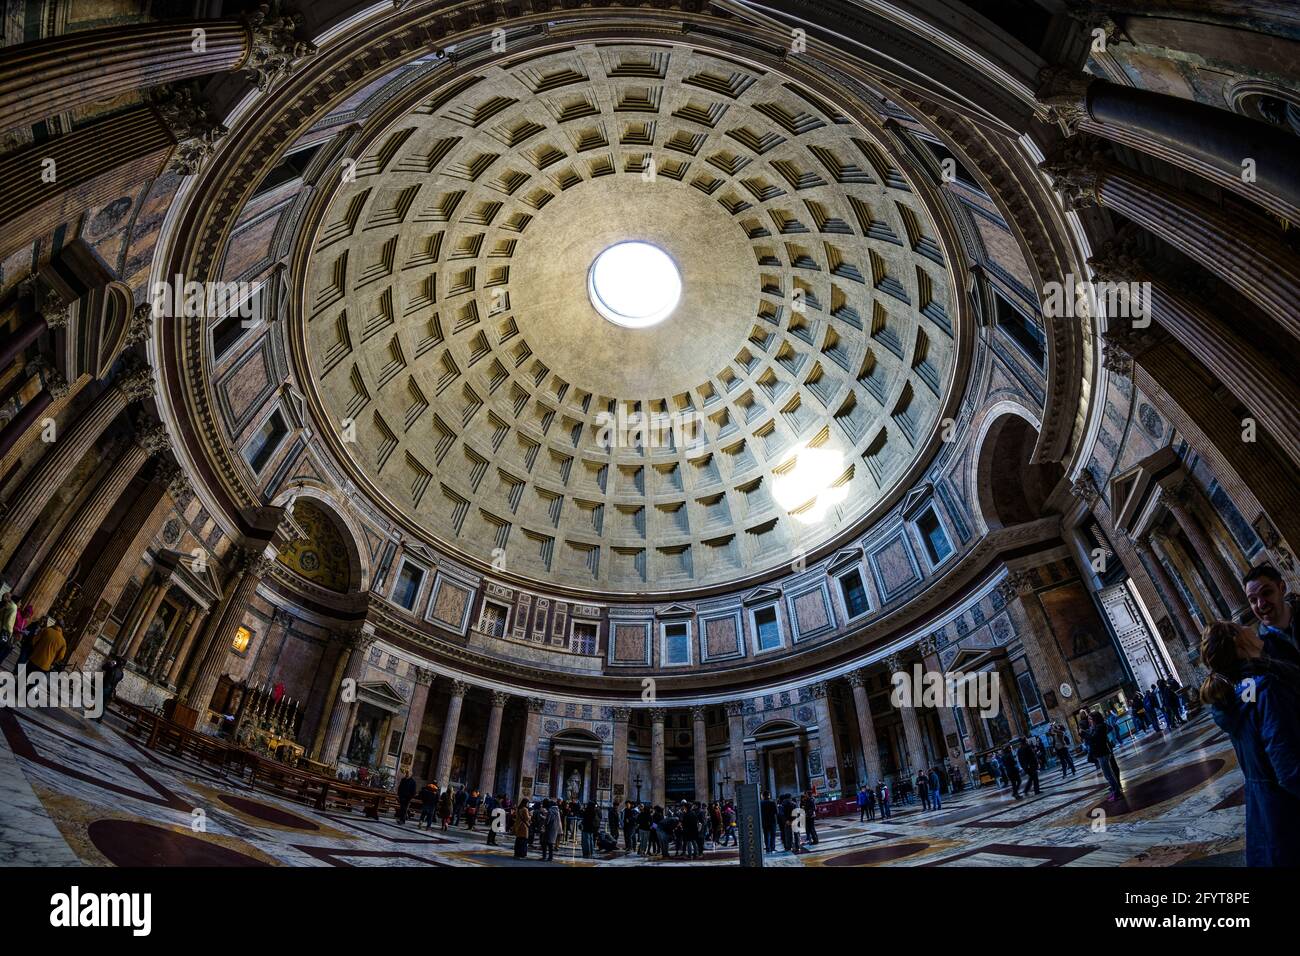 La decoración interior del Panteón de Roma Foto de stock